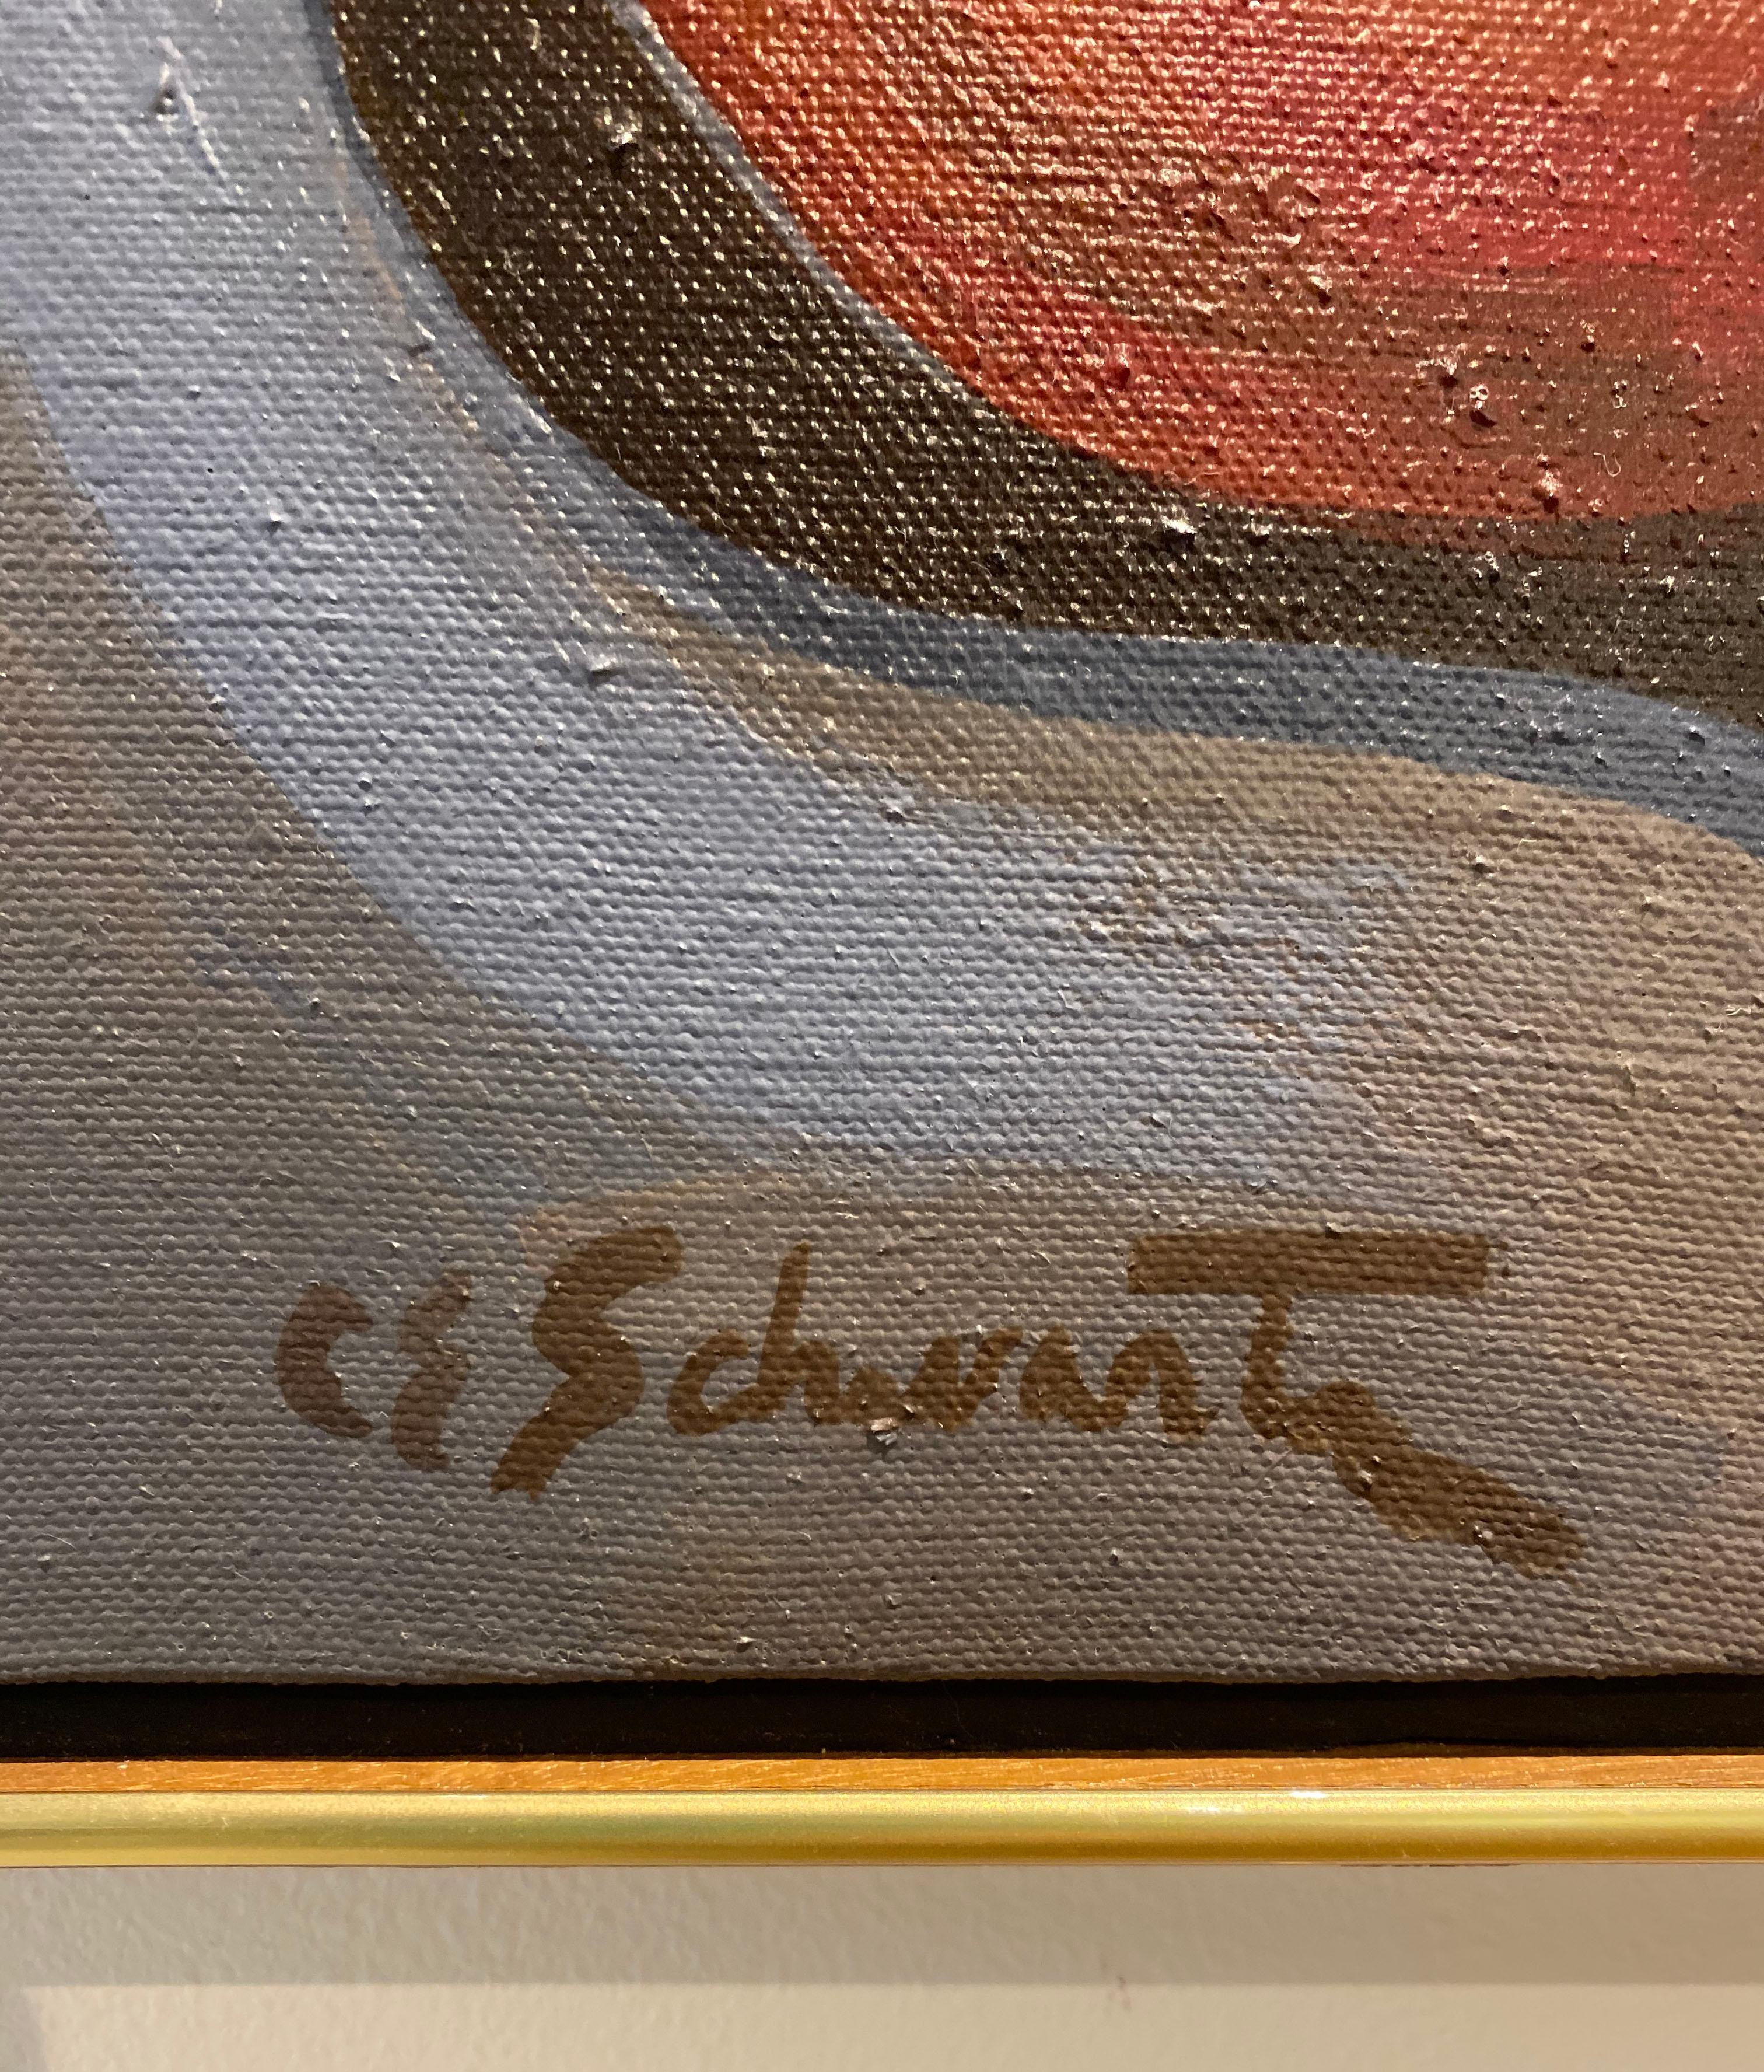 CHERRY-CHEESCHEESCHECK (Zeitgenössisch), Painting, von Carl E. Schwartz